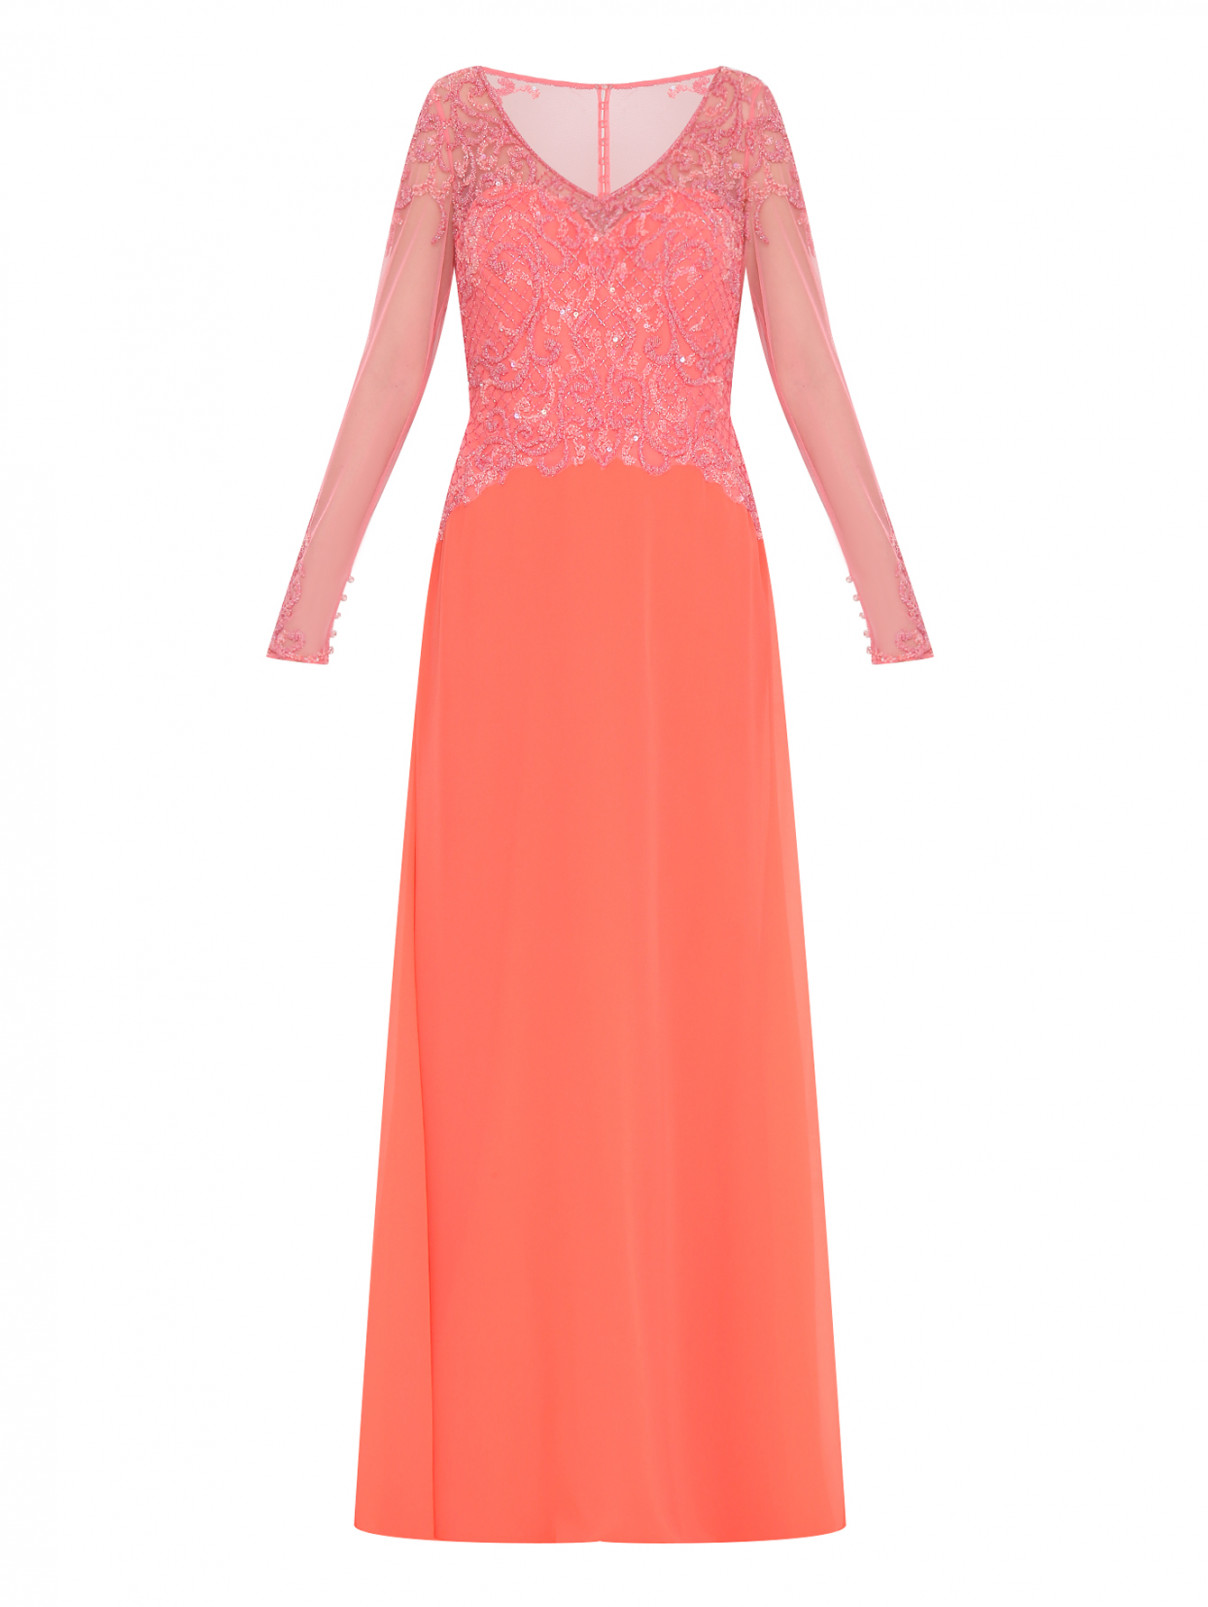 Платье-макси декорированное бисером и пайетками Rosa Clara  –  Общий вид  – Цвет:  Оранжевый